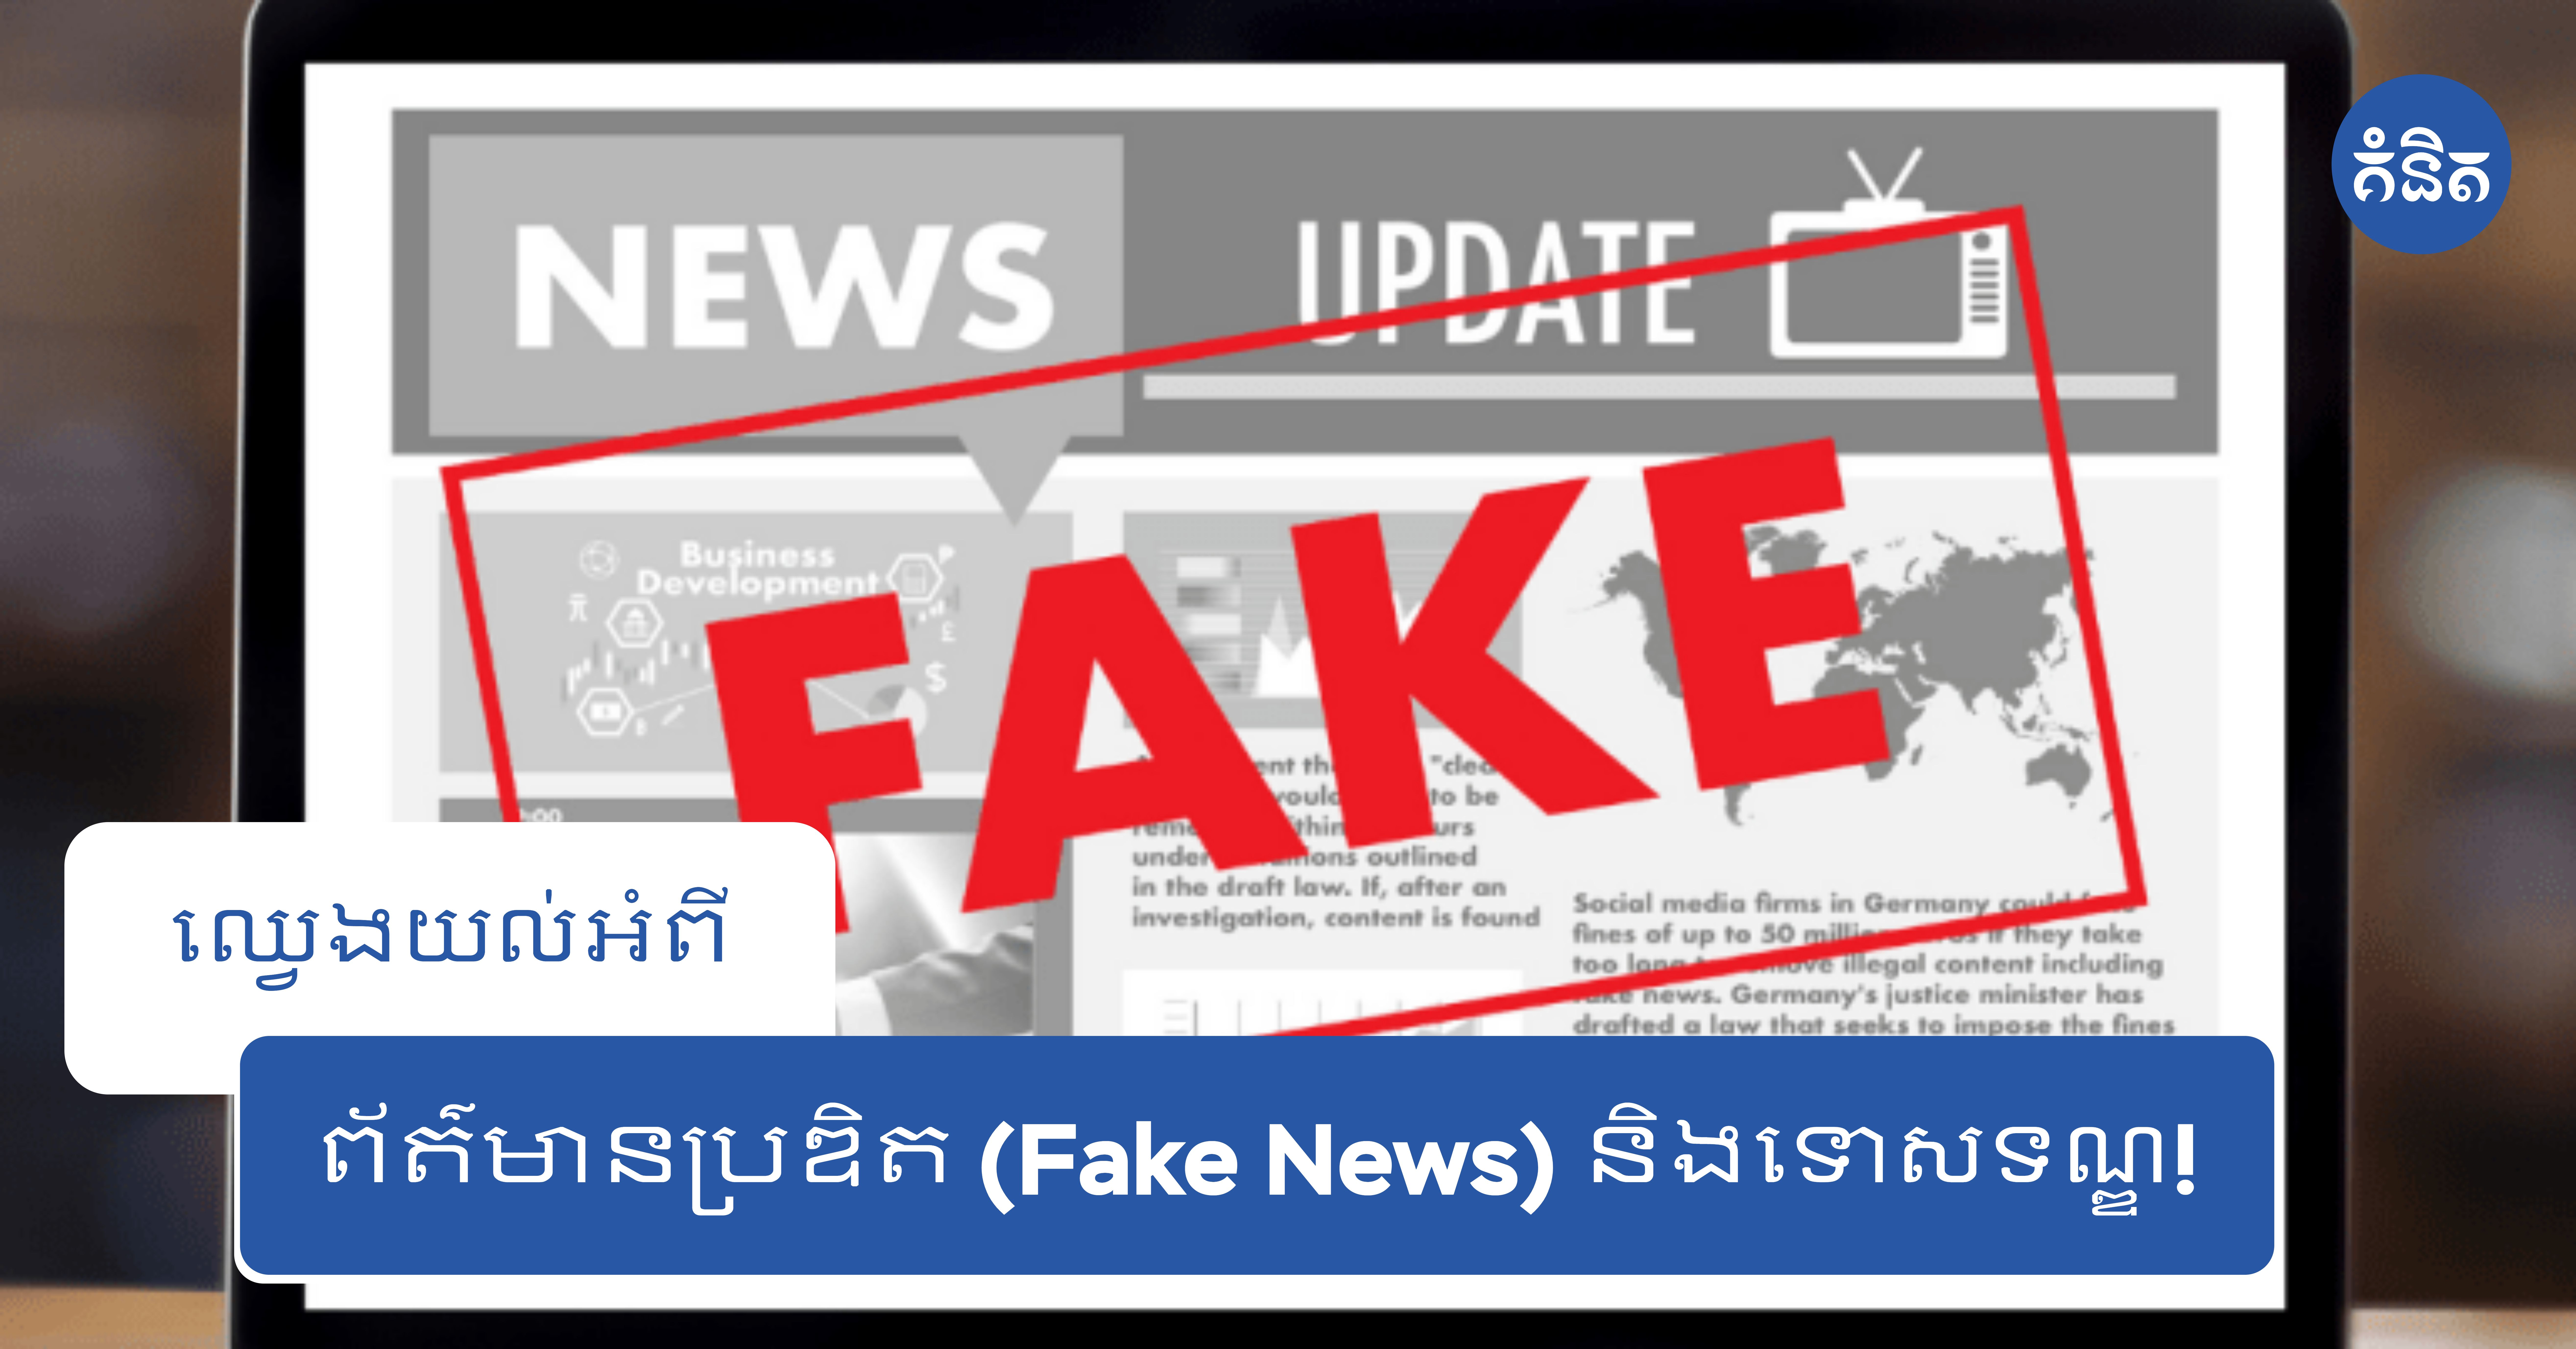 ឈ្វេងយល់អំពីព័ត៌មានប្រឌិត (Fake News) និងទោសទណ្ឌ!